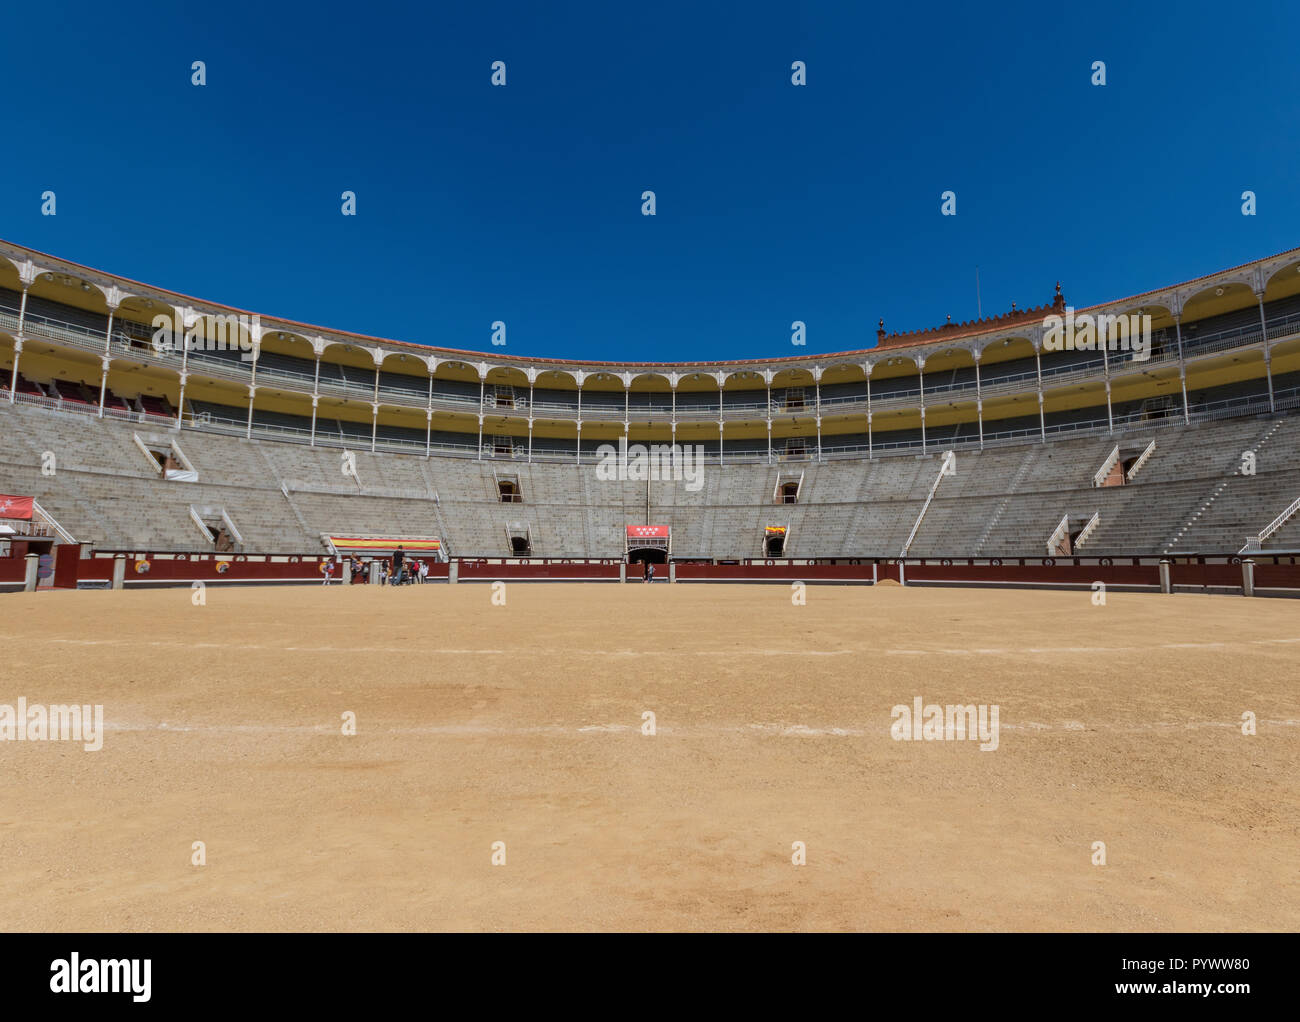 Madrid, Spagna - con una capacità di posti a sedere di 23,798, Las Ventas è uno dei più grandi arene, durante le corride nel mondo. Qui in particolare una vista degli stand Foto Stock